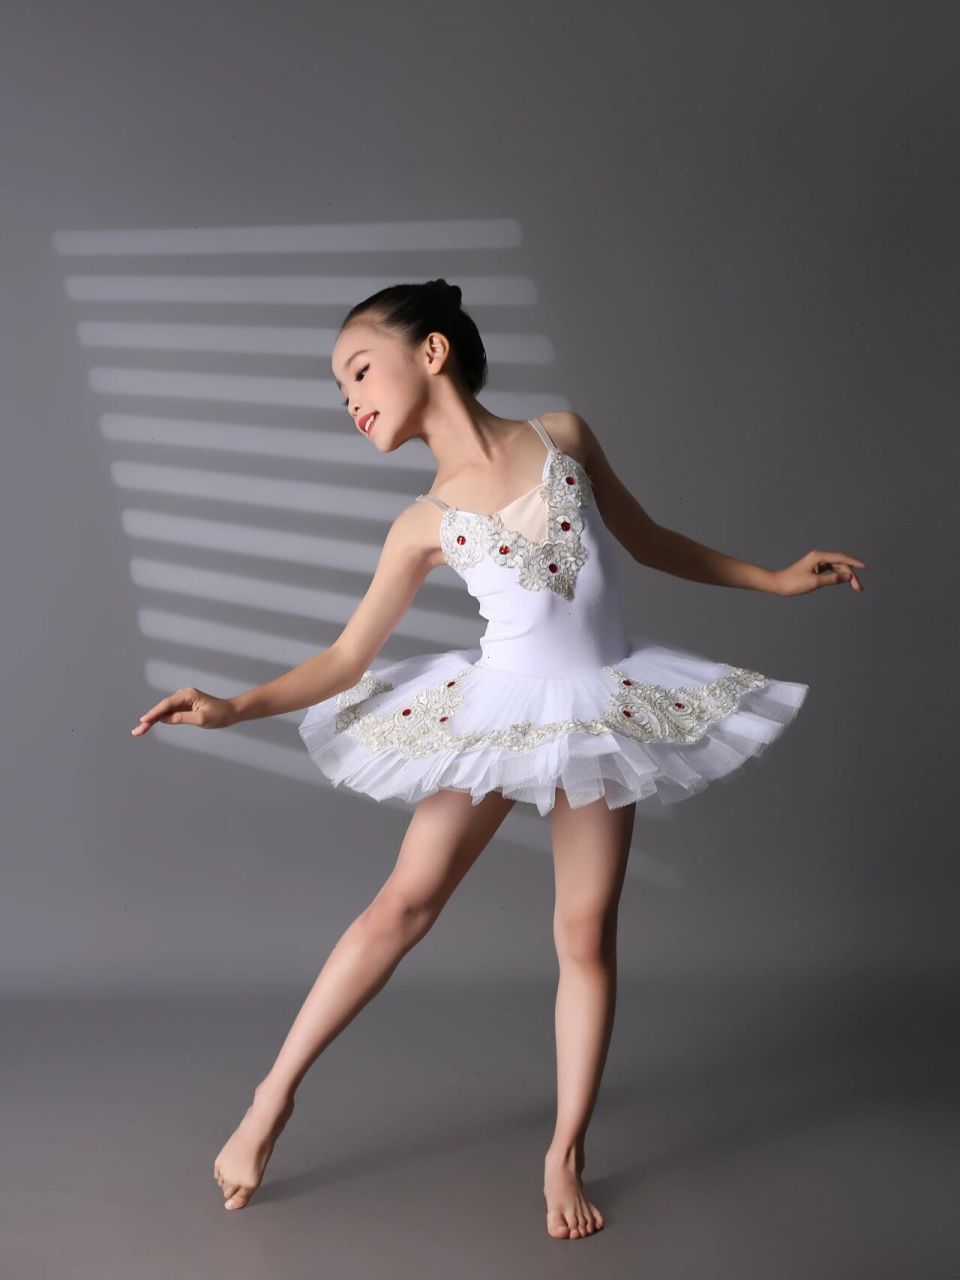 学舞蹈的女孩子都特别有气质 柔美纤细的肢体,漂亮的身体线条 干净